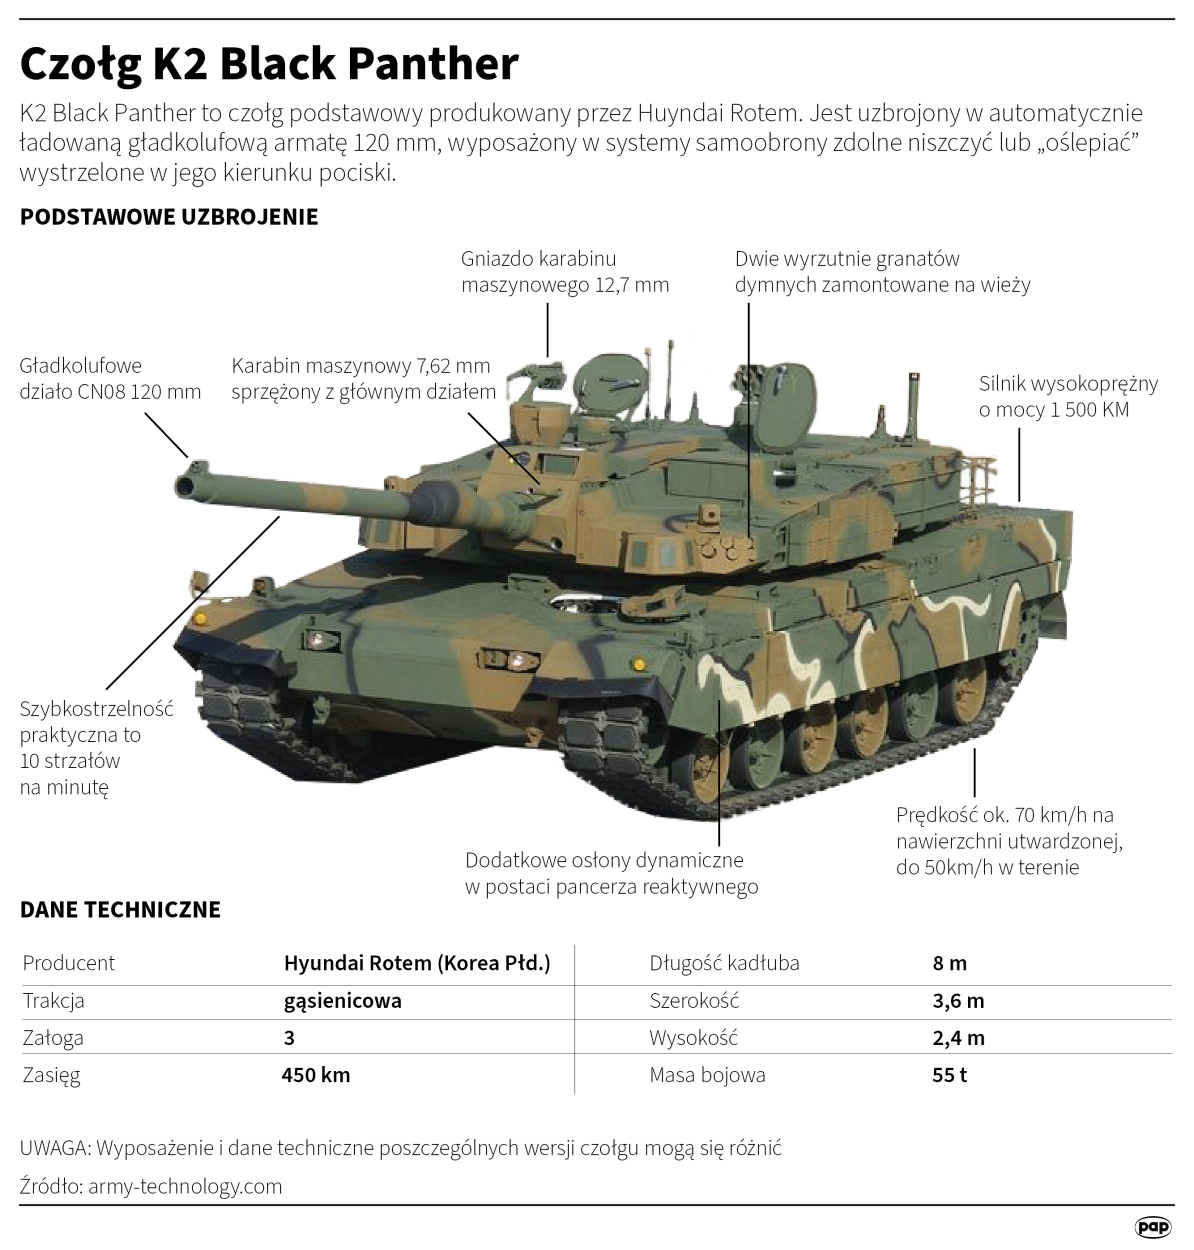 Czołg K2 Black Panther, autor: PAP/Maciej Zieliński